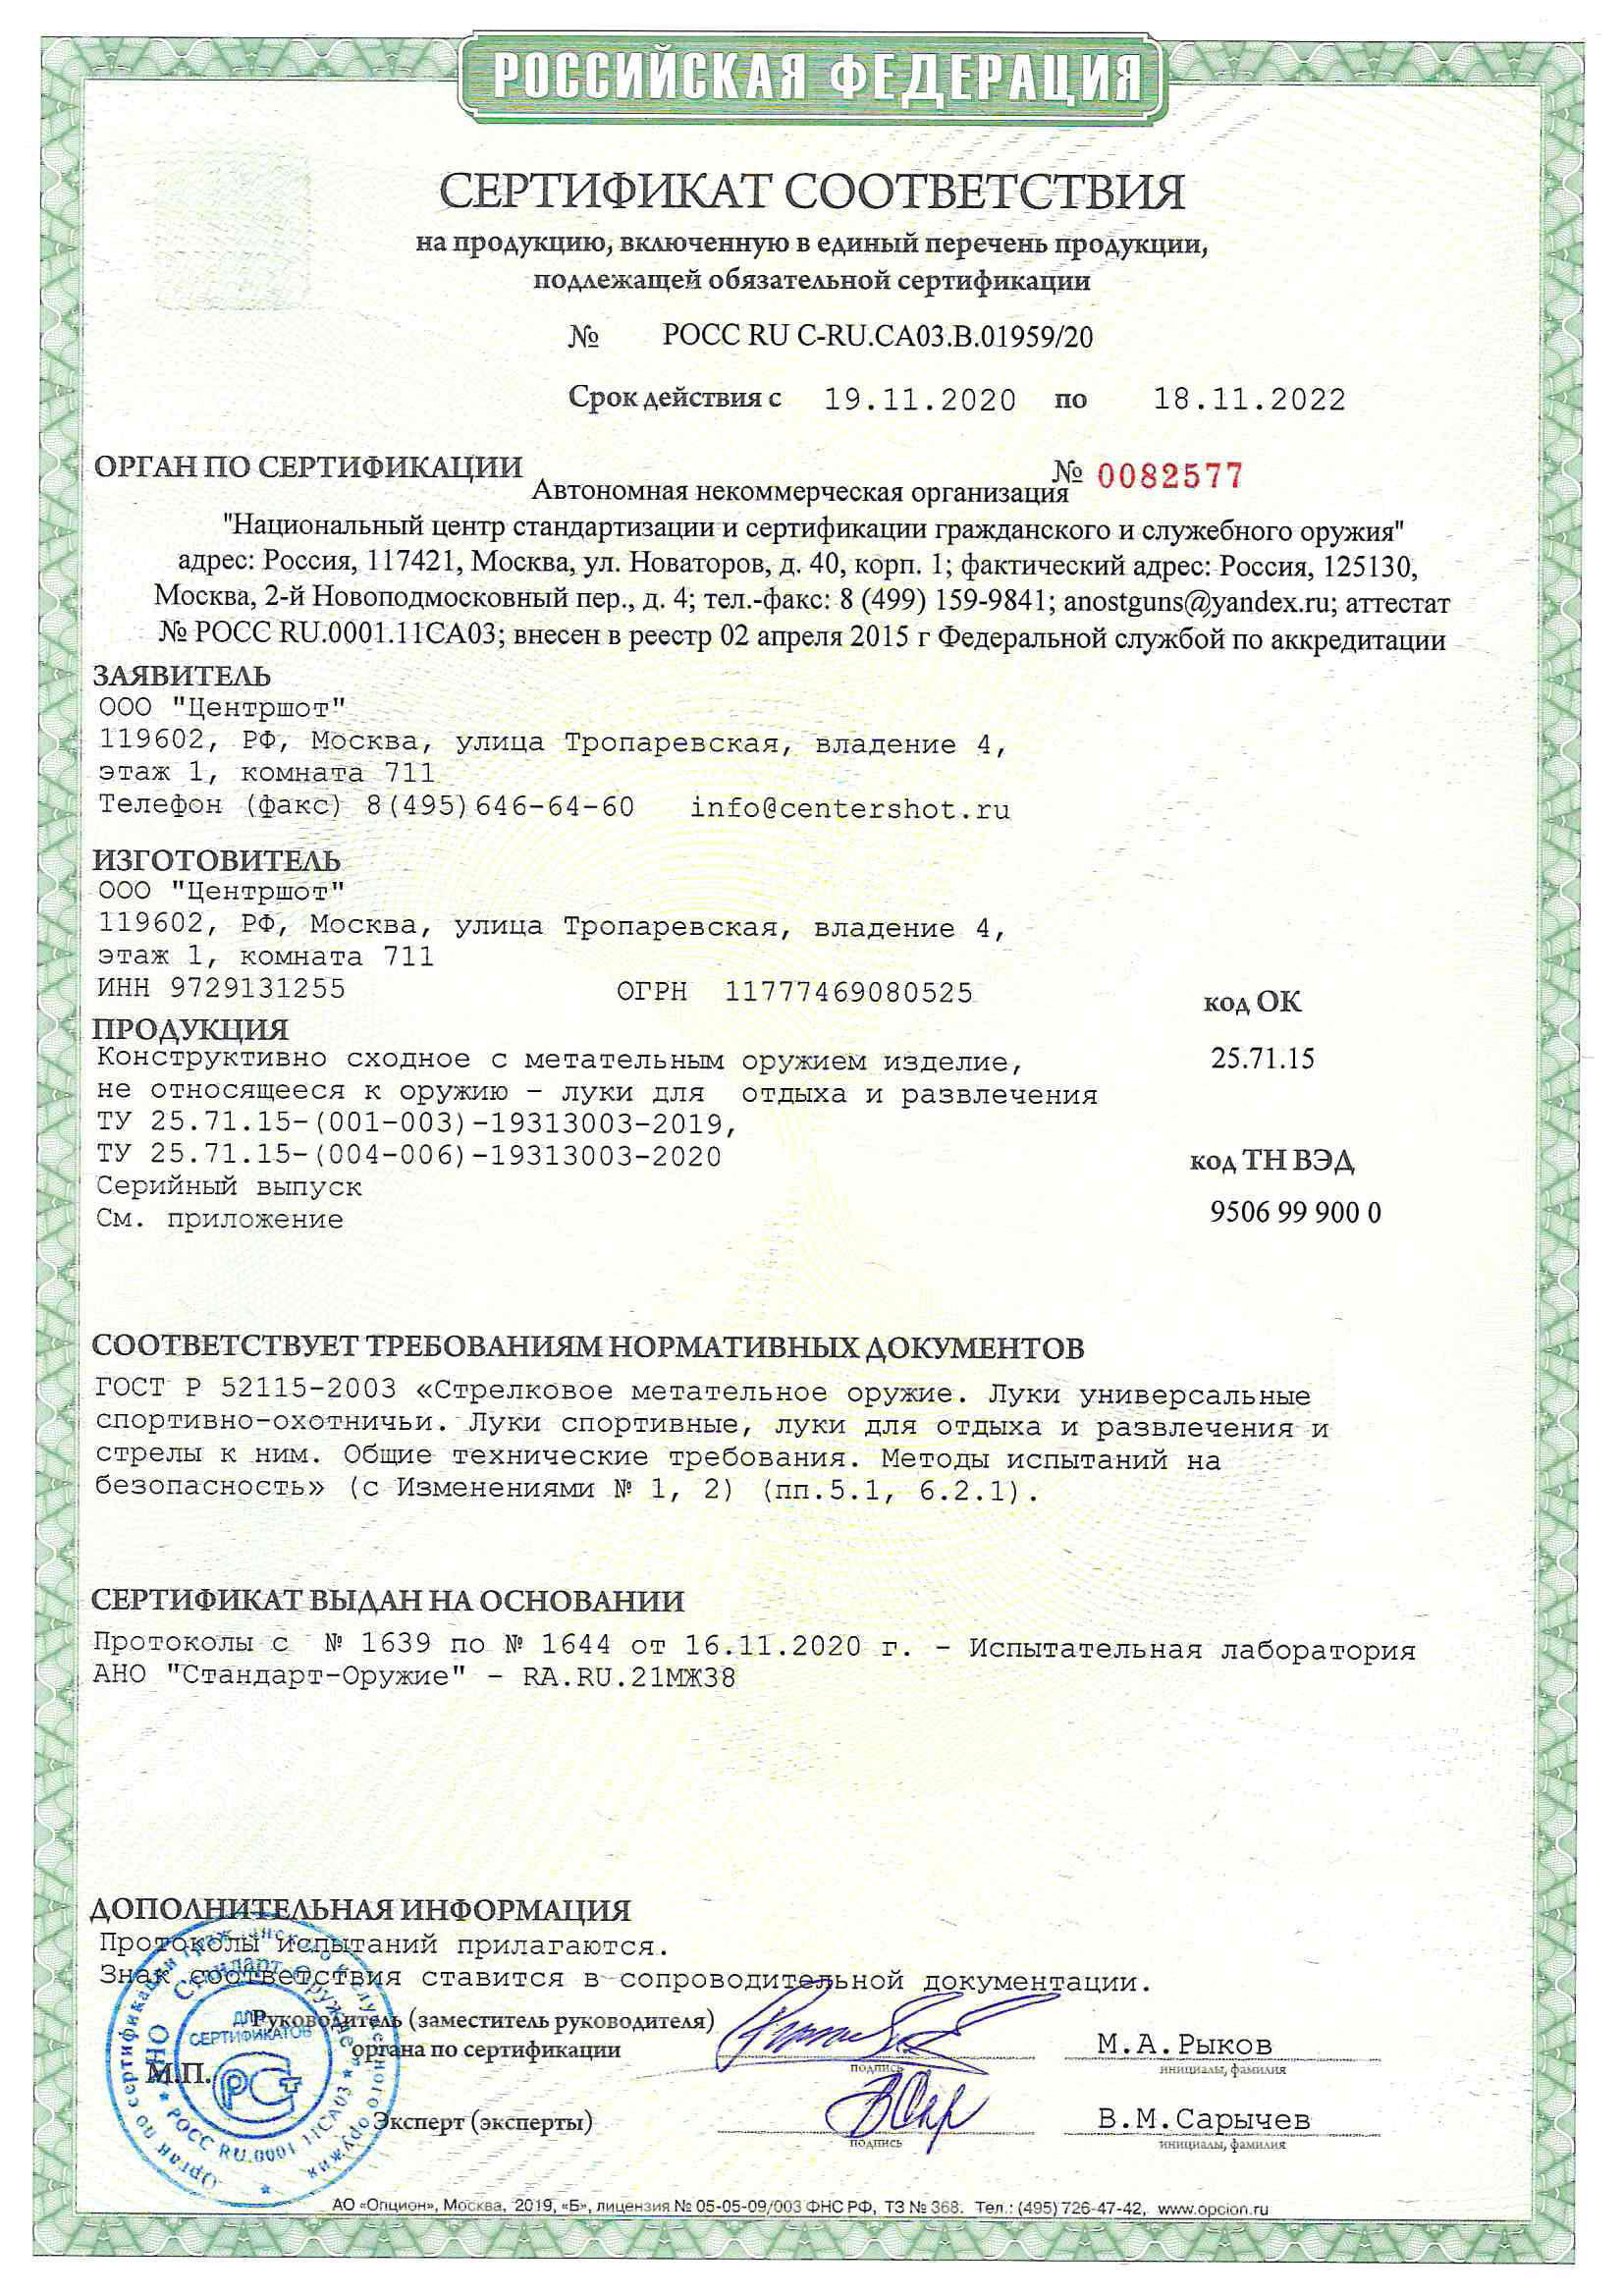 *Сертификат* Лук детский блочный Centershot Корсар черный (с комплектом) Сертификат соответствия №POCC RU C-RU.CA03.B.01959/20 сертификат Корсар